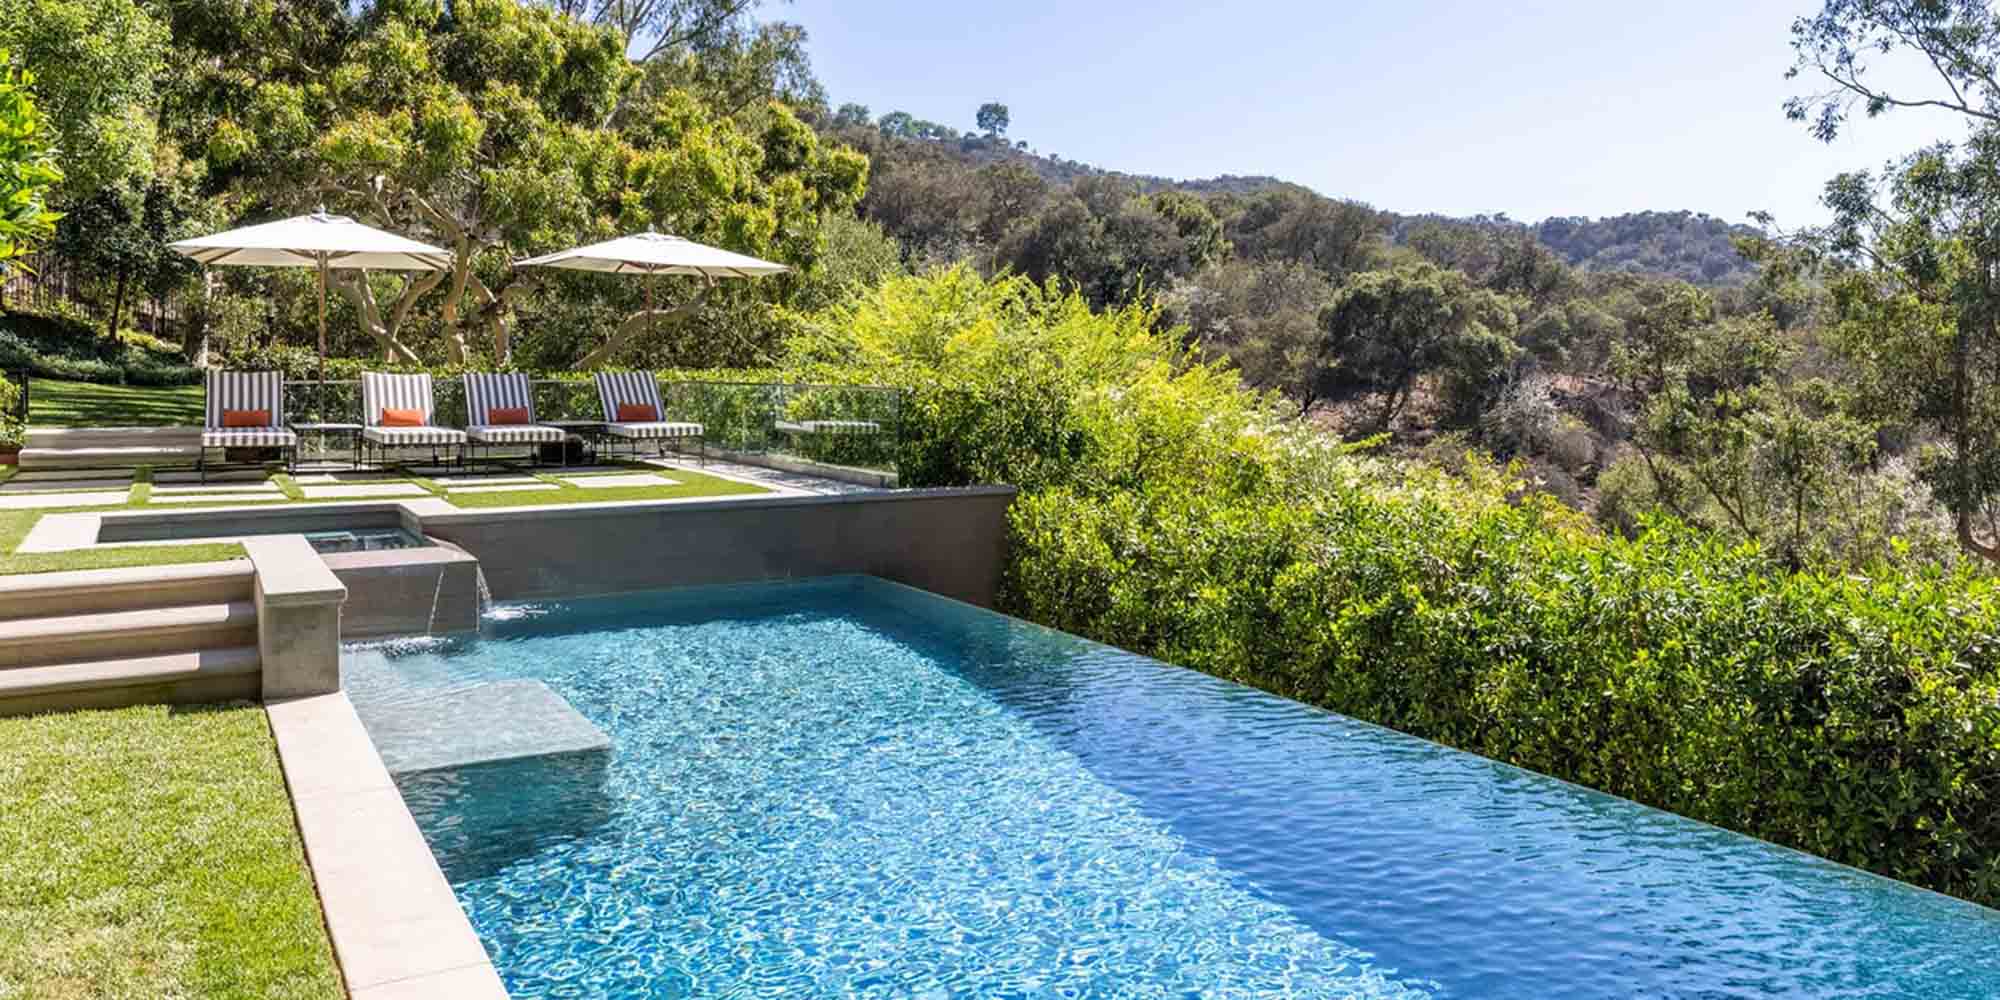 Η πισίνα στο σπίτι της Κέιτ Πέρι είναι ένα από τα χλιδάτα σημεία της έπαυλης